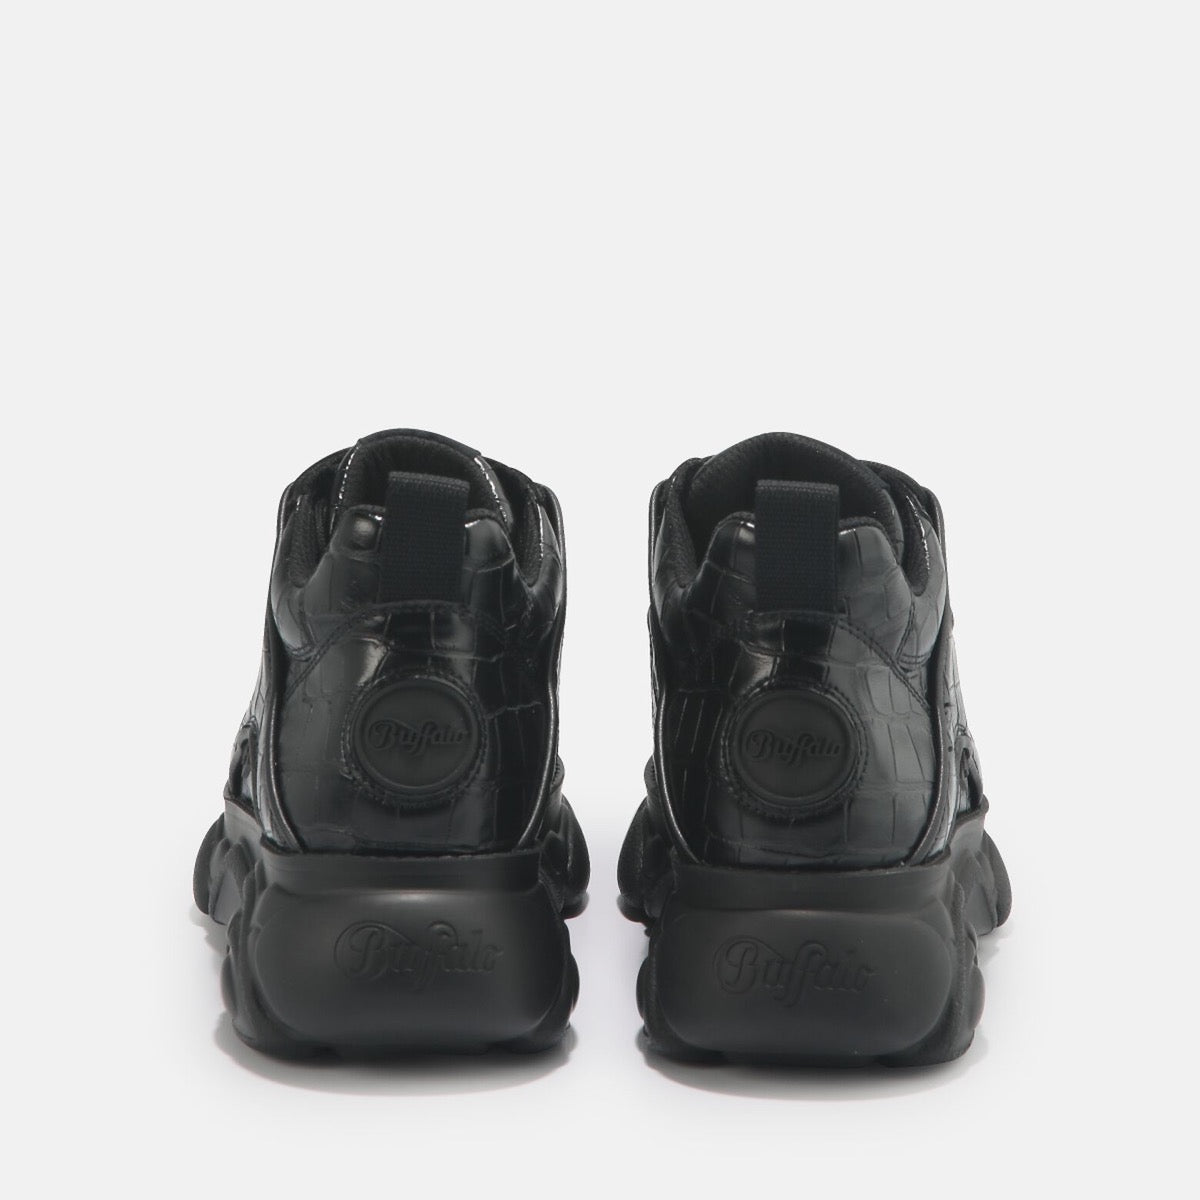 Scarpe BUFFALO Sneakers Vegan linea CLD Corin stampa Cocco colore Nero